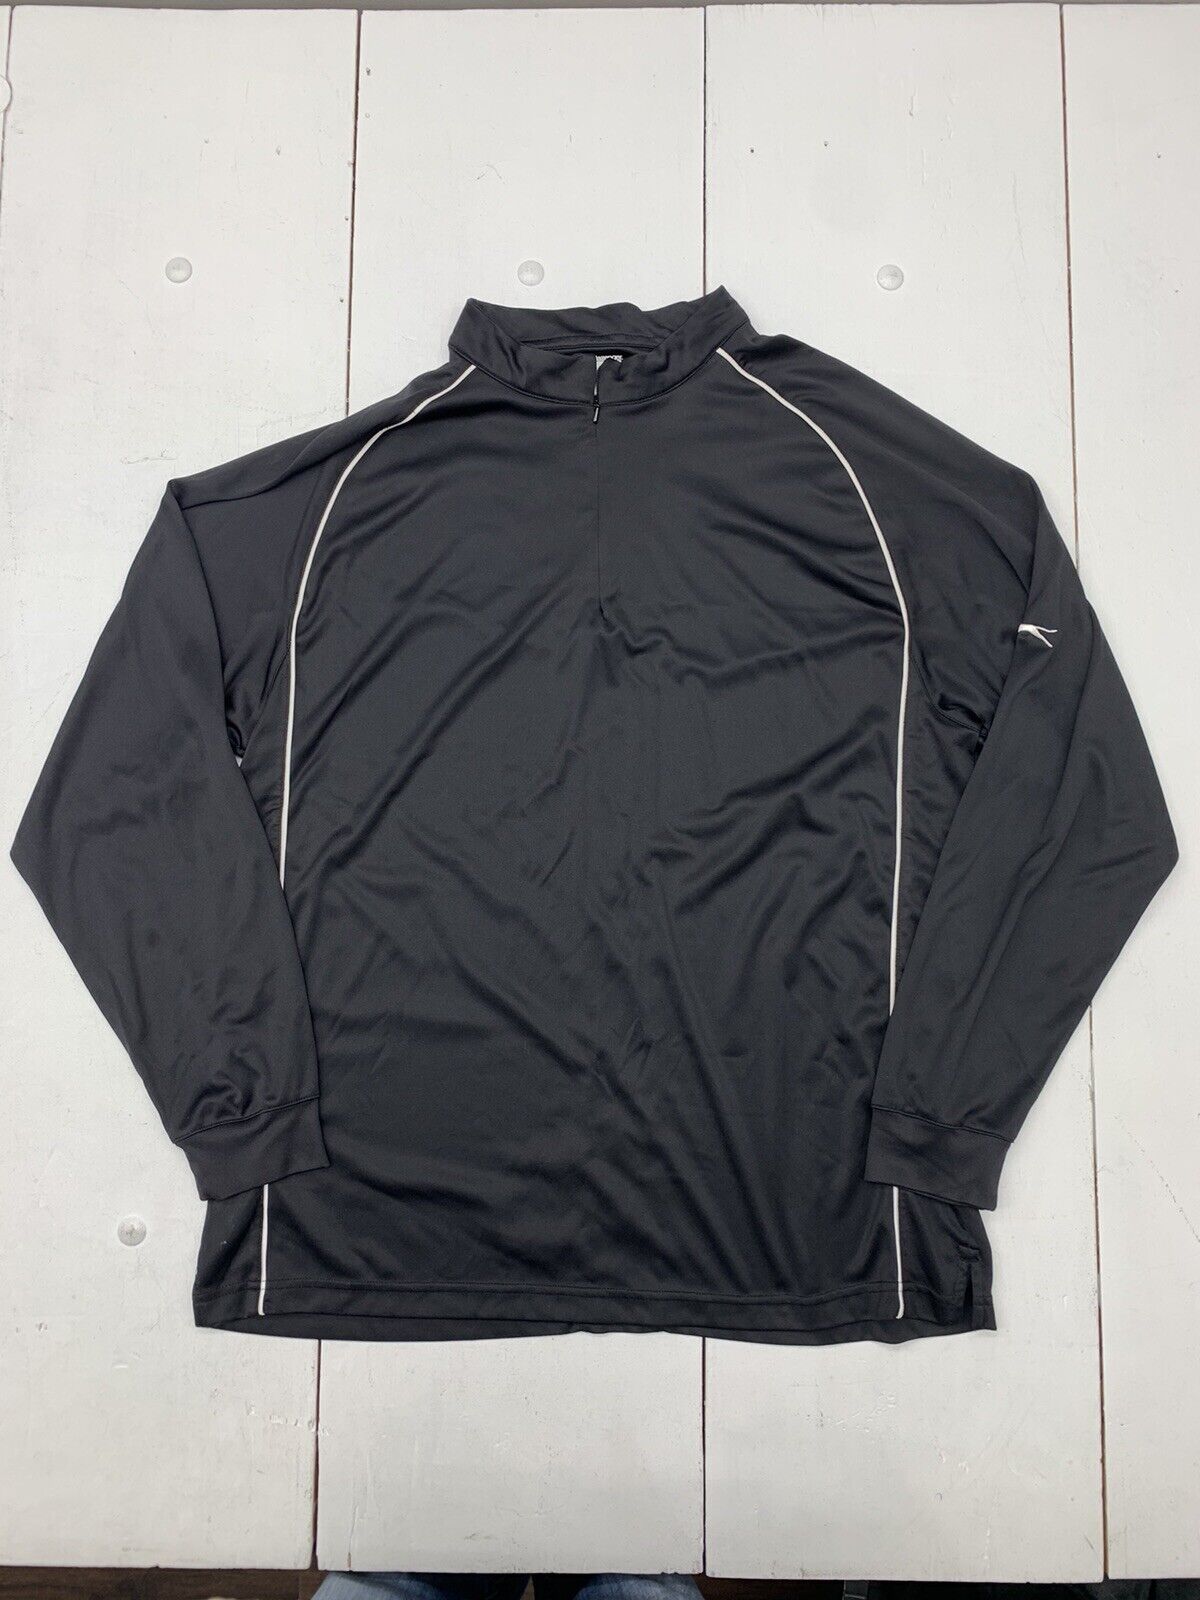 Slazenger Mens Black 1/4 Zip Jacket Size XL